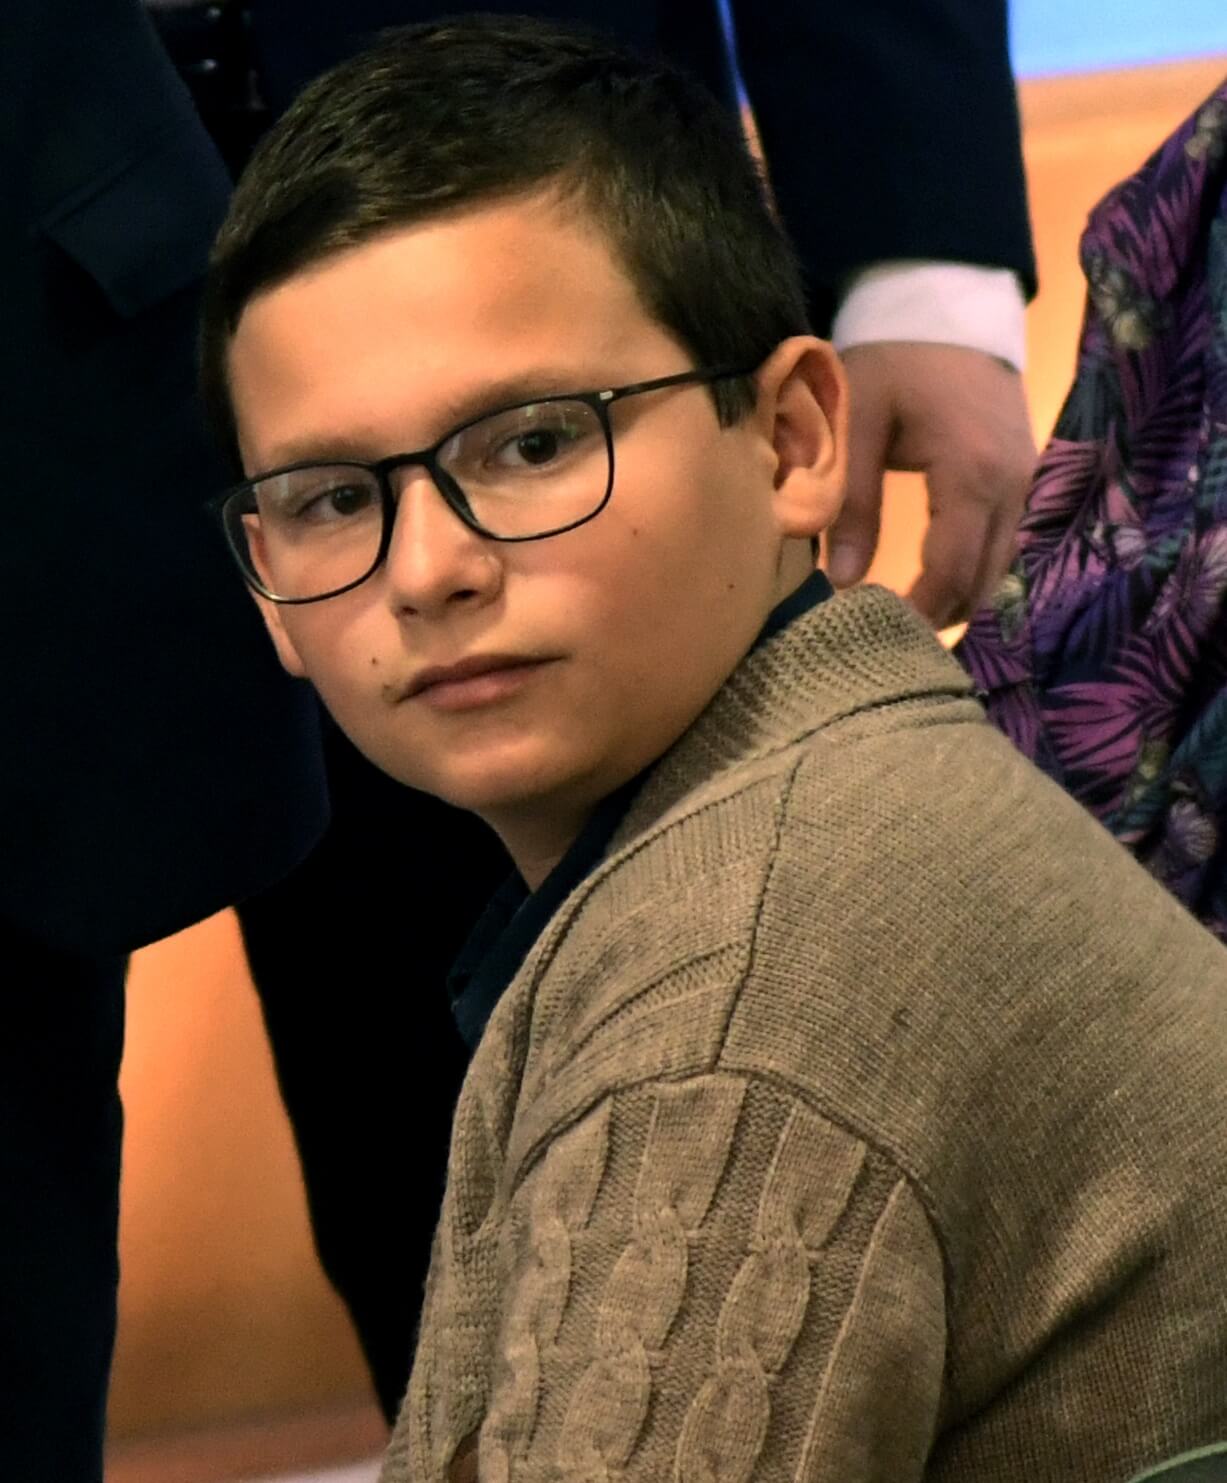 11χρονος Λαρισαίος έγινε χάλκινος στην Ρομποτική Ολυμπιάδα (φωτο)